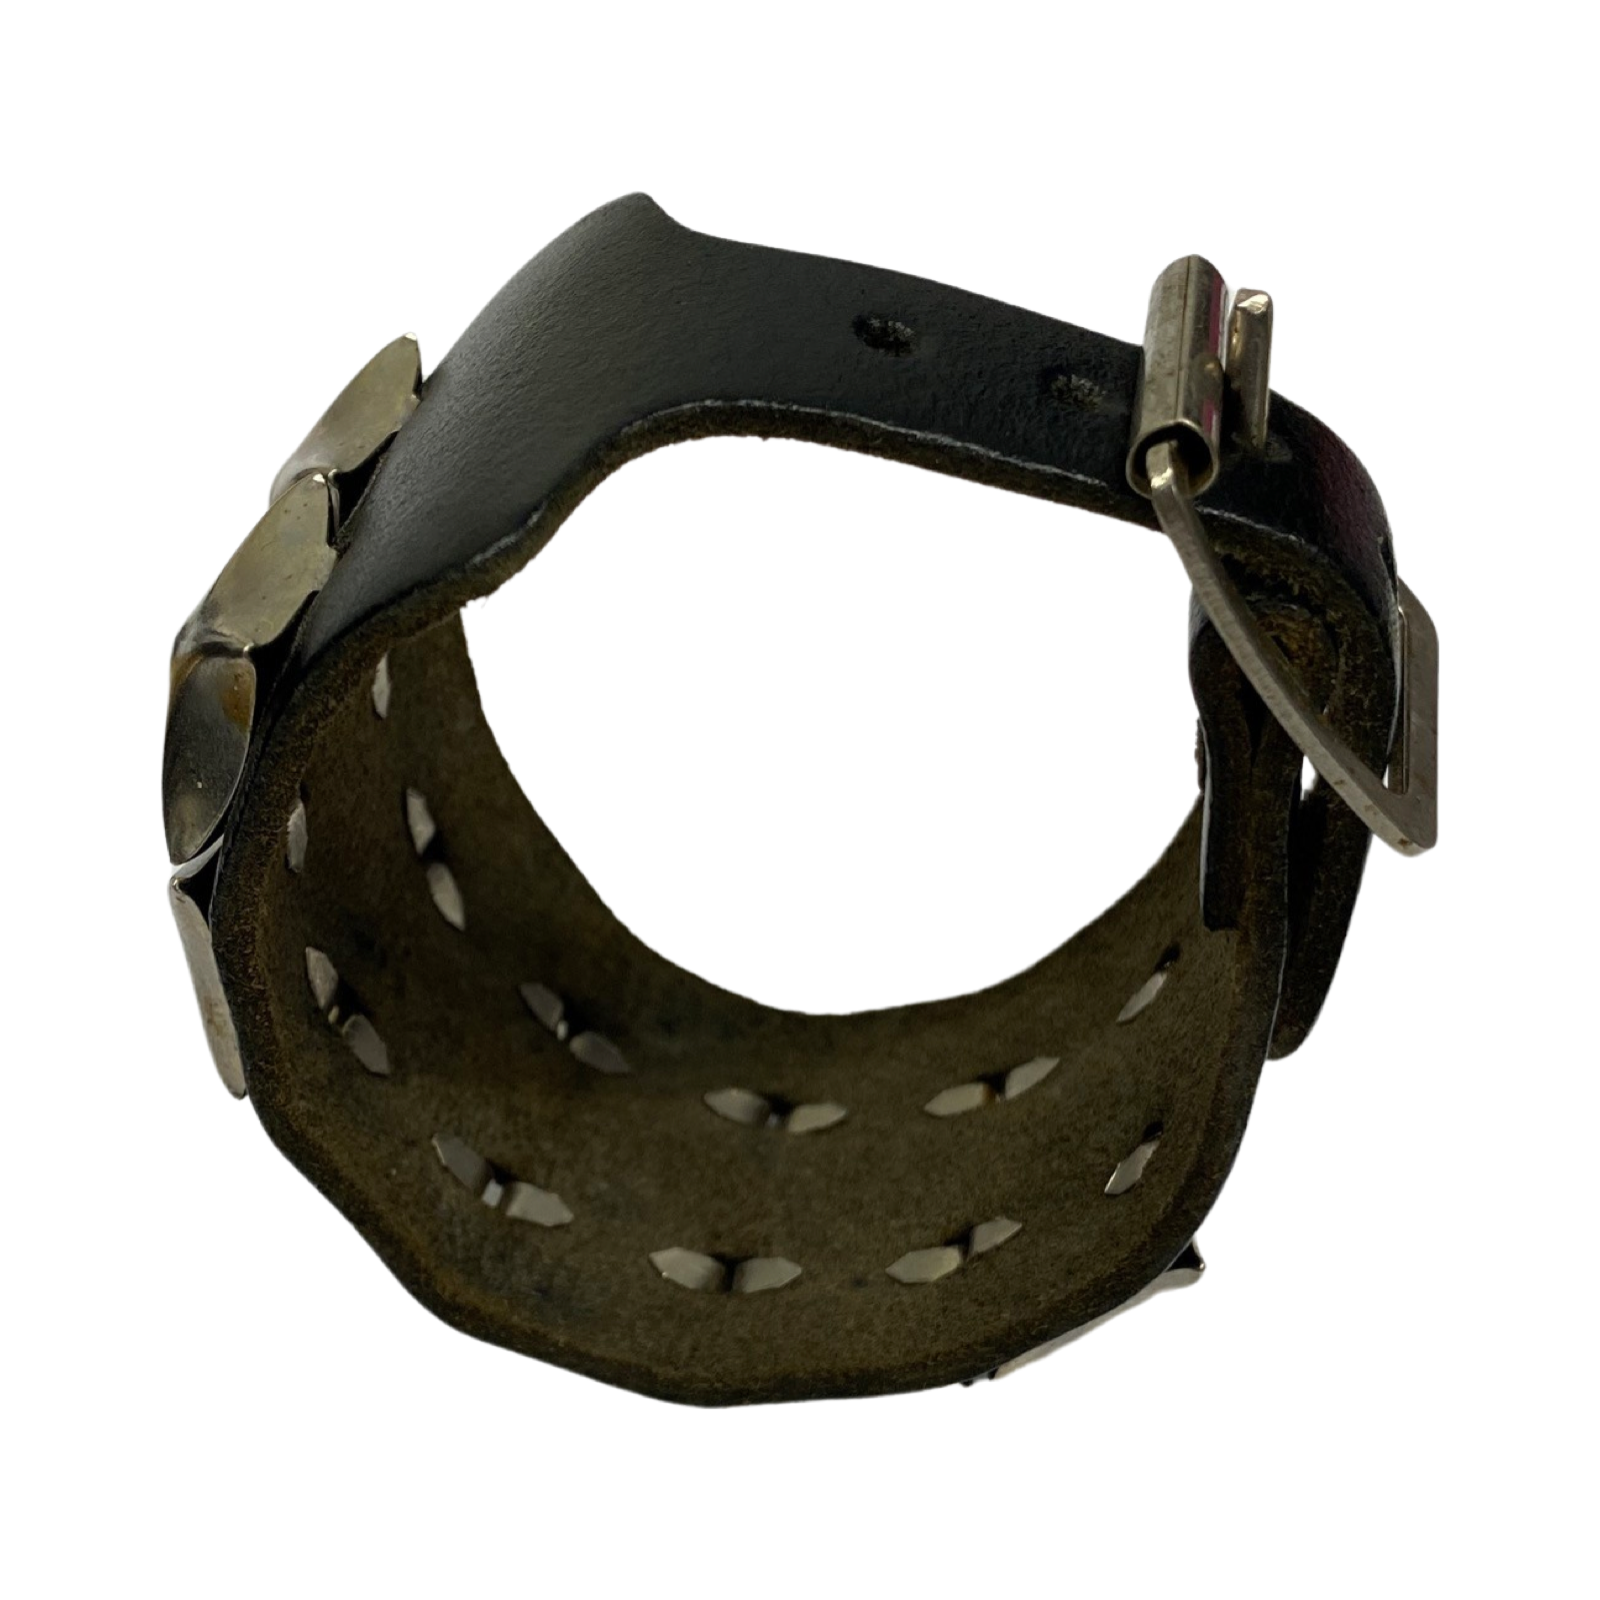 Studded Leather Strap Cuff Bracelet